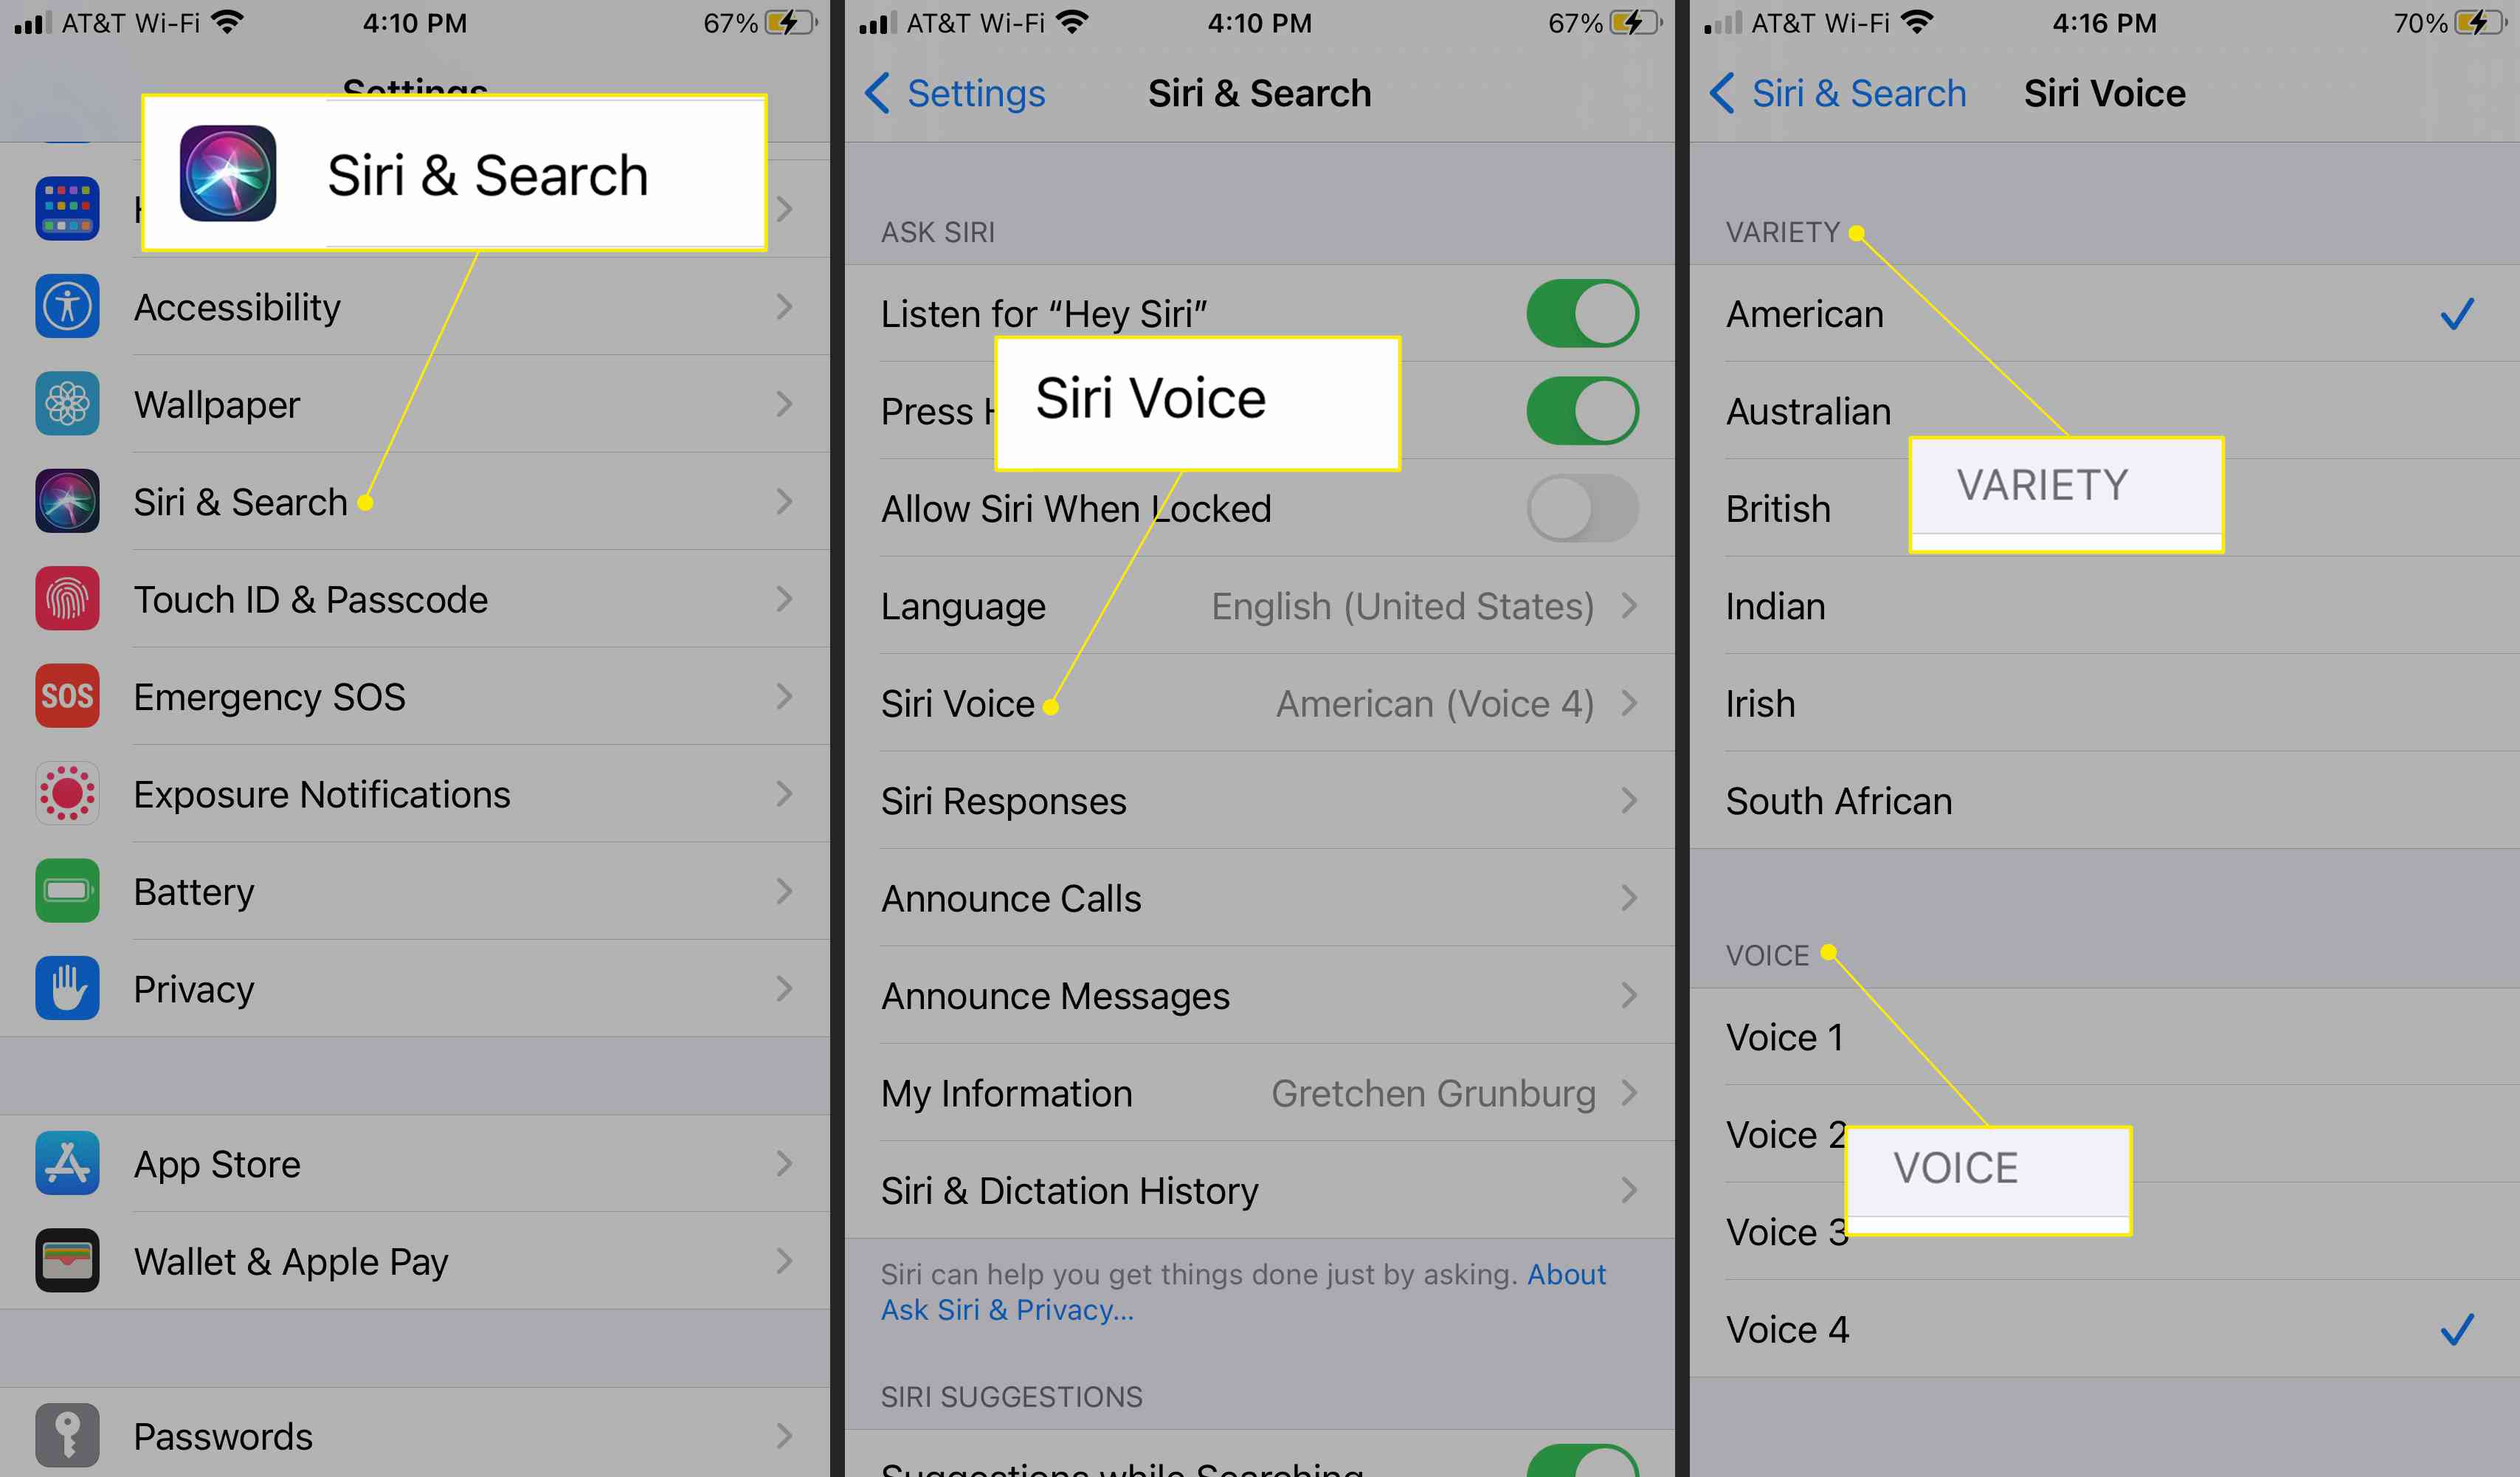 iPhone-instellingen met Siri & Search, Siri Voice en Variety en Voice-opties gemarkeerd